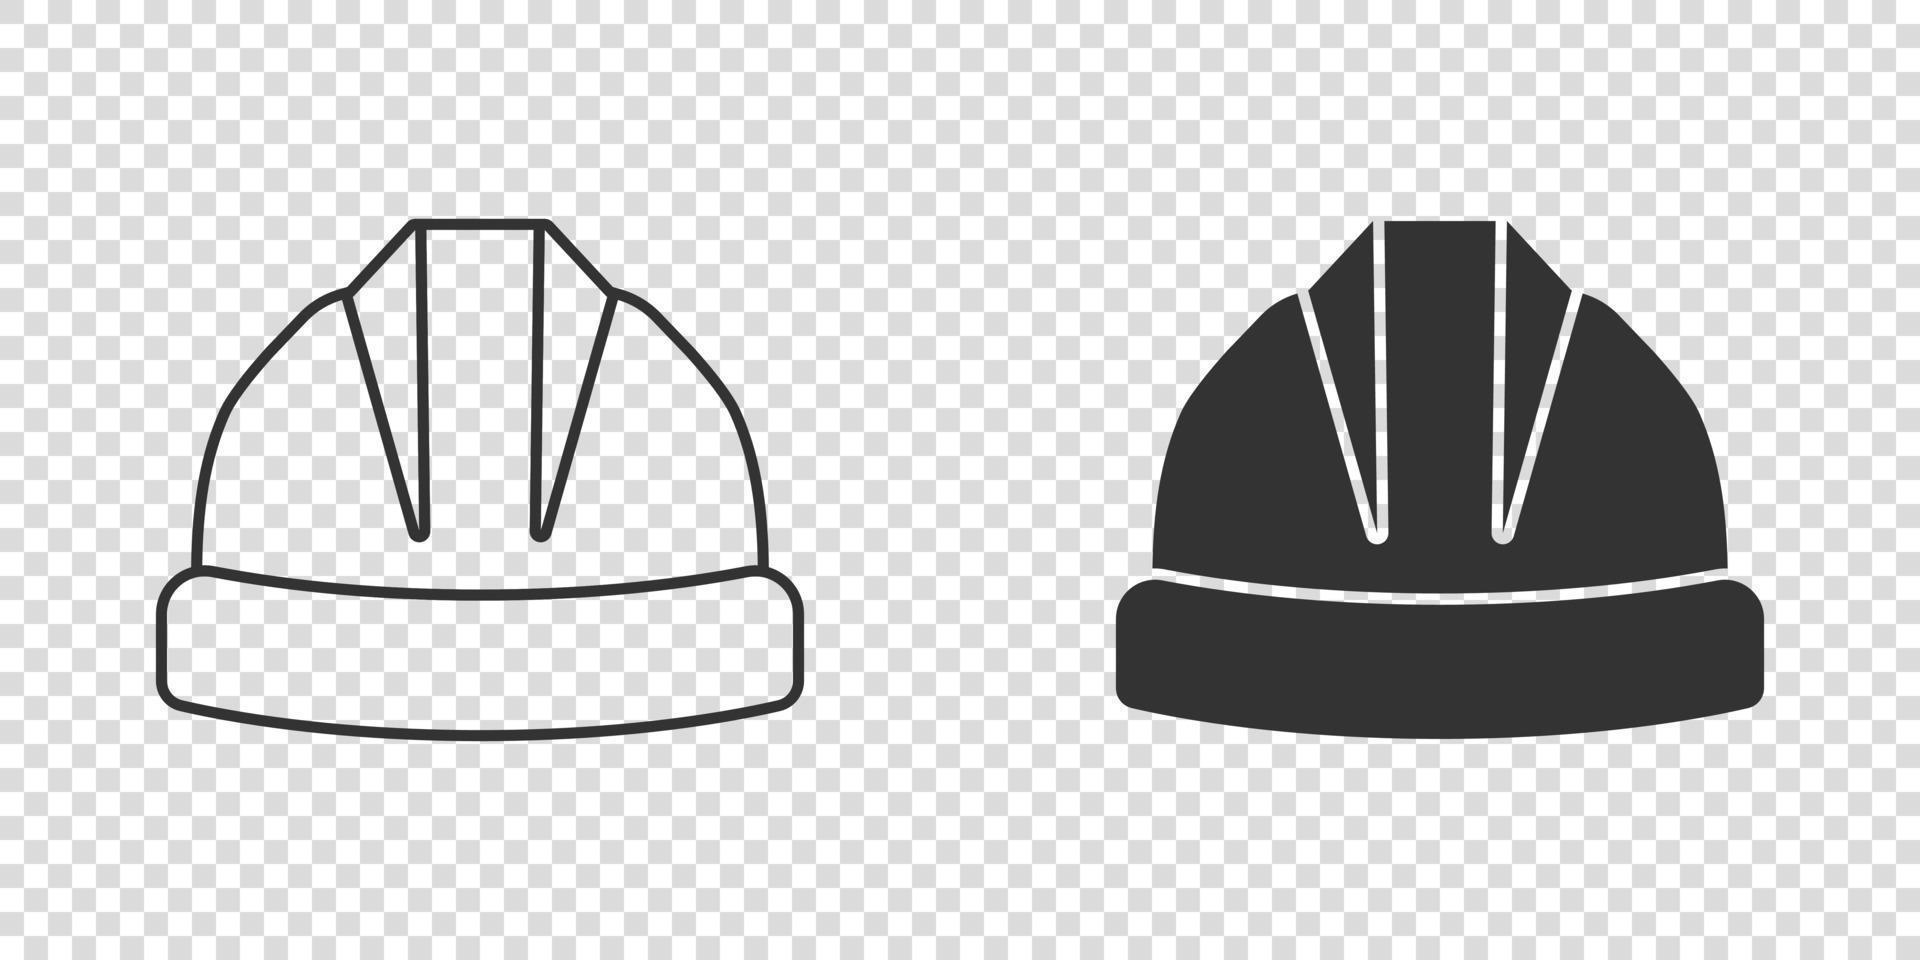 ícone do capacete de construção em estilo simples. ilustração em vetor tampa de segurança em fundo isolado. conceito de negócio de sinal de chapéu de trabalhador.